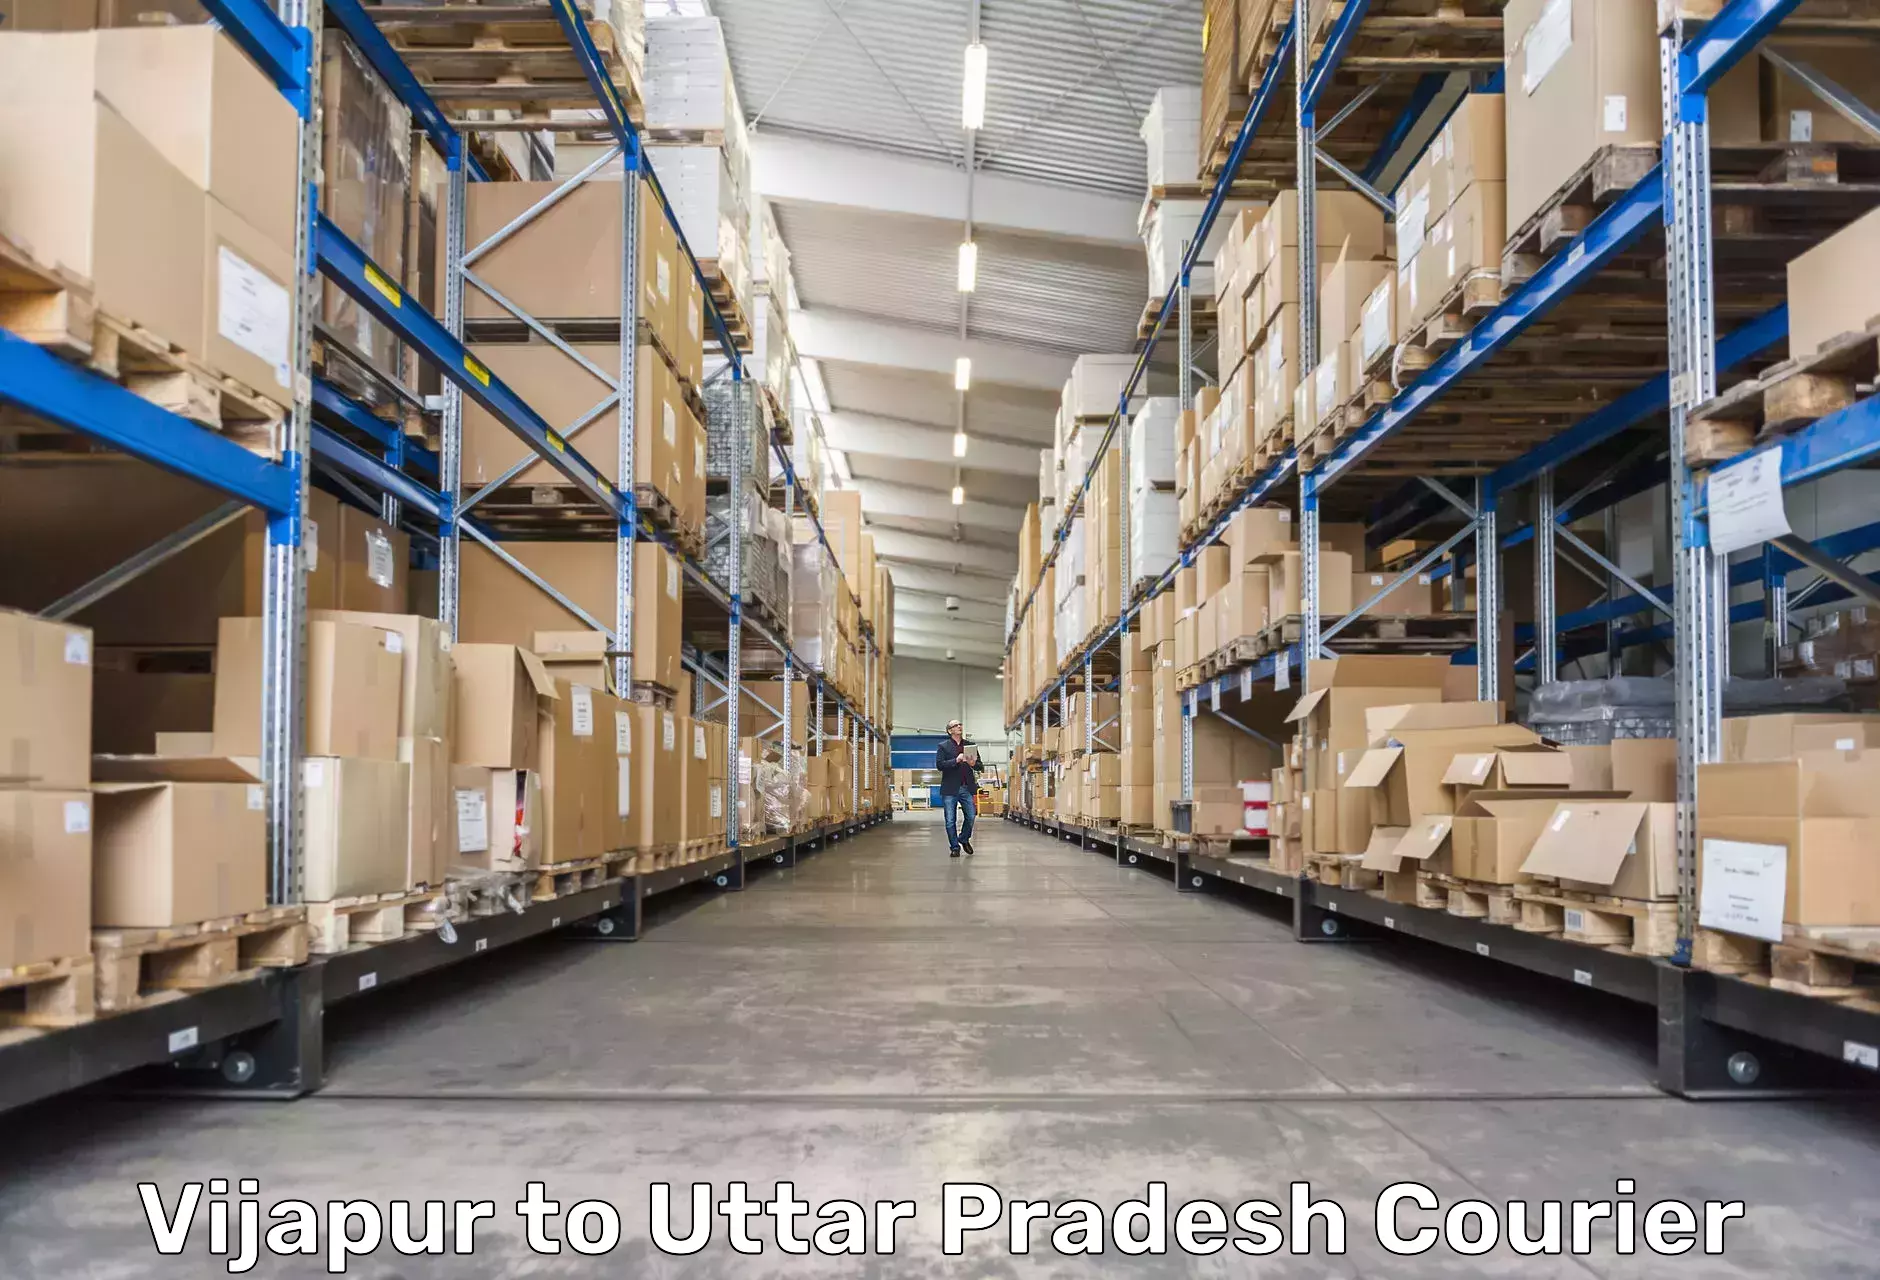 24-hour courier service Vijapur to Deoria